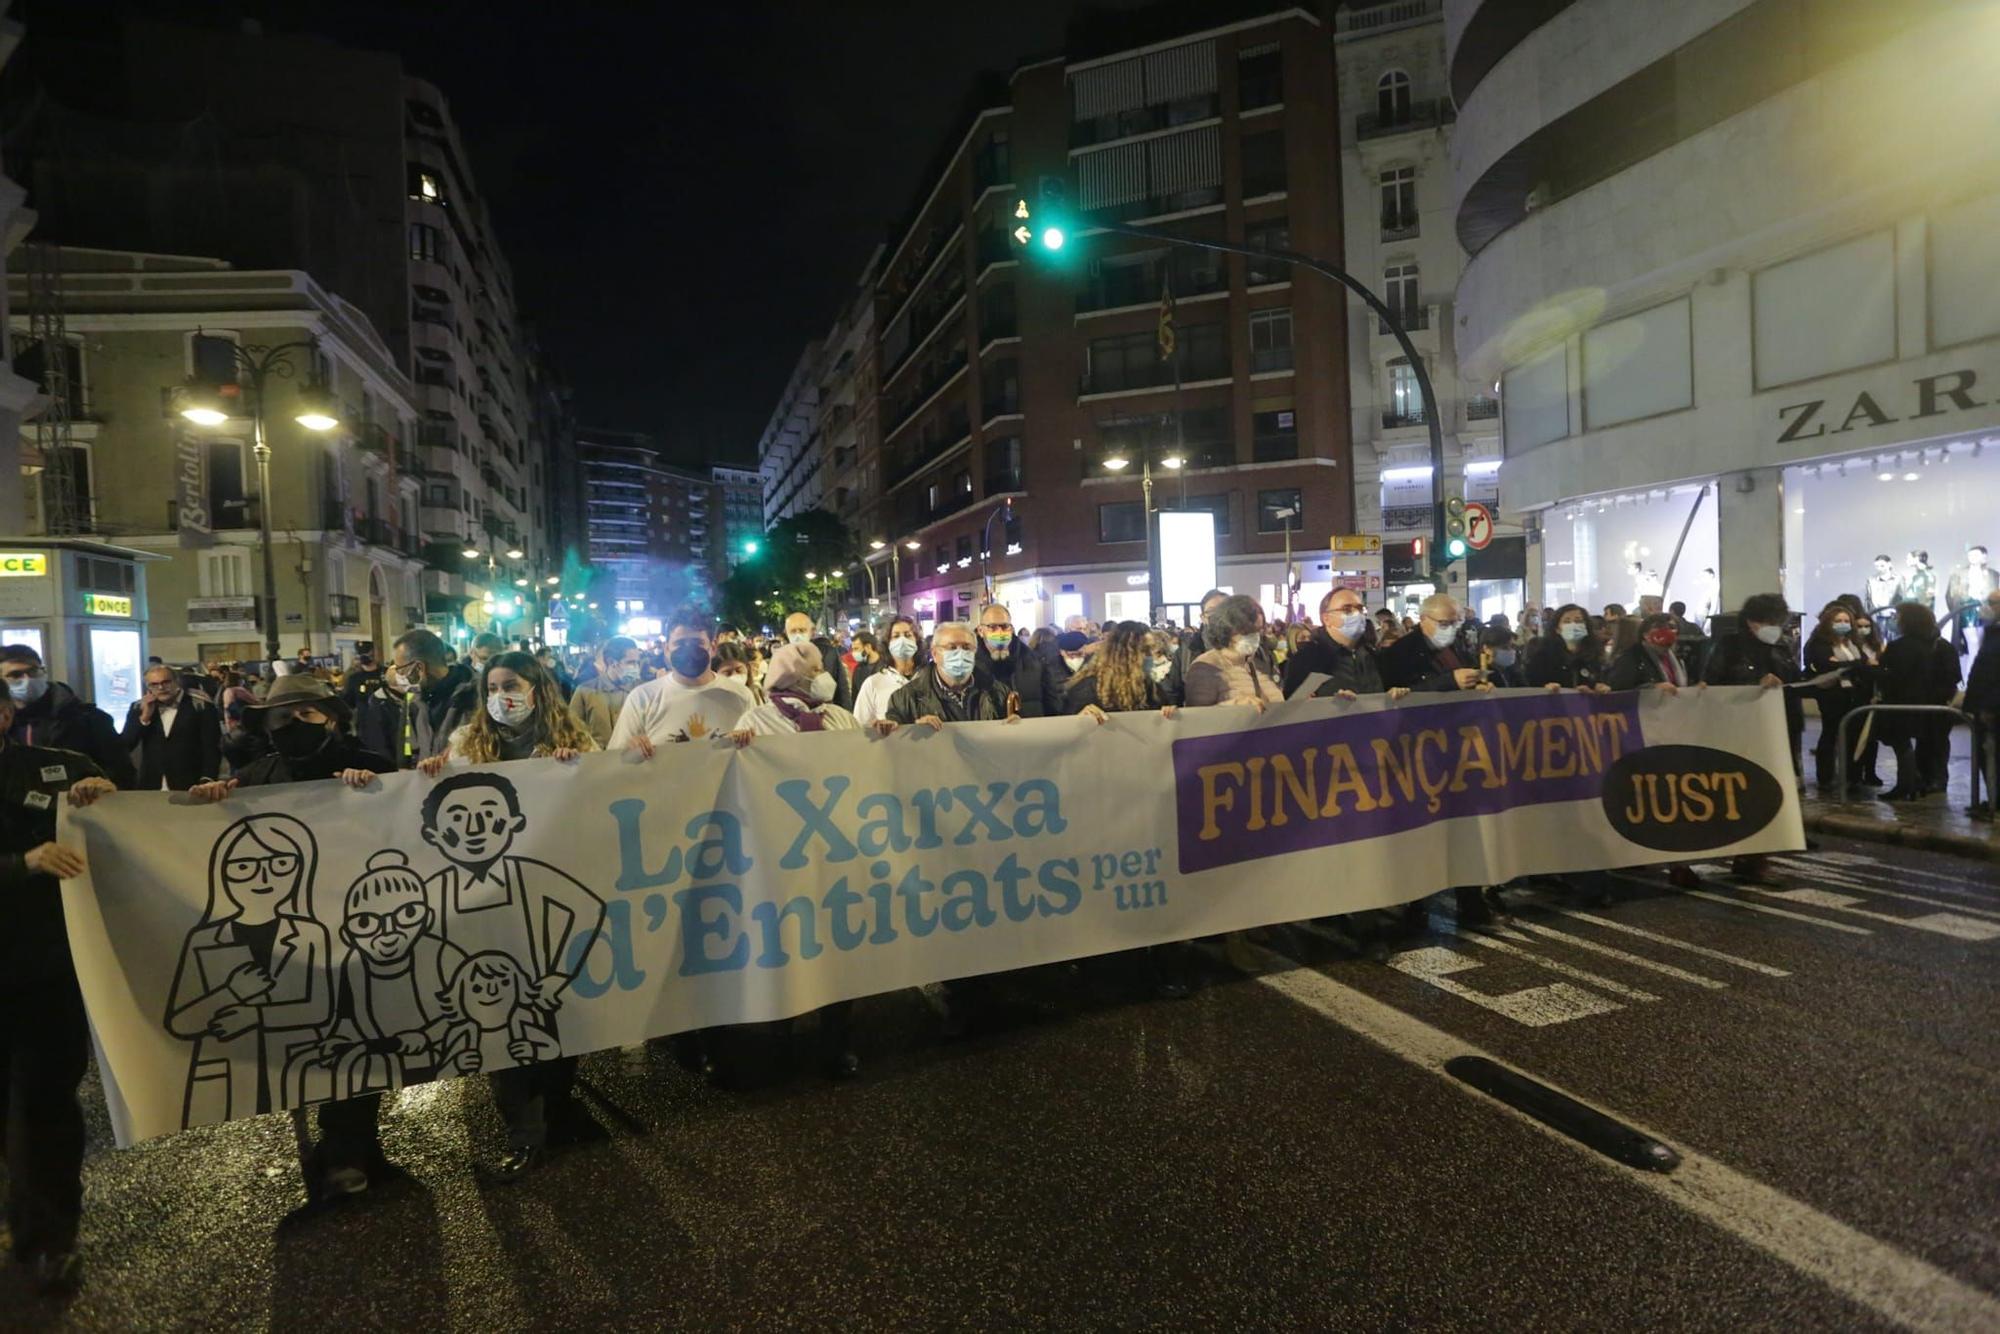 La manifestación en València por una financiación justa, en imágenes